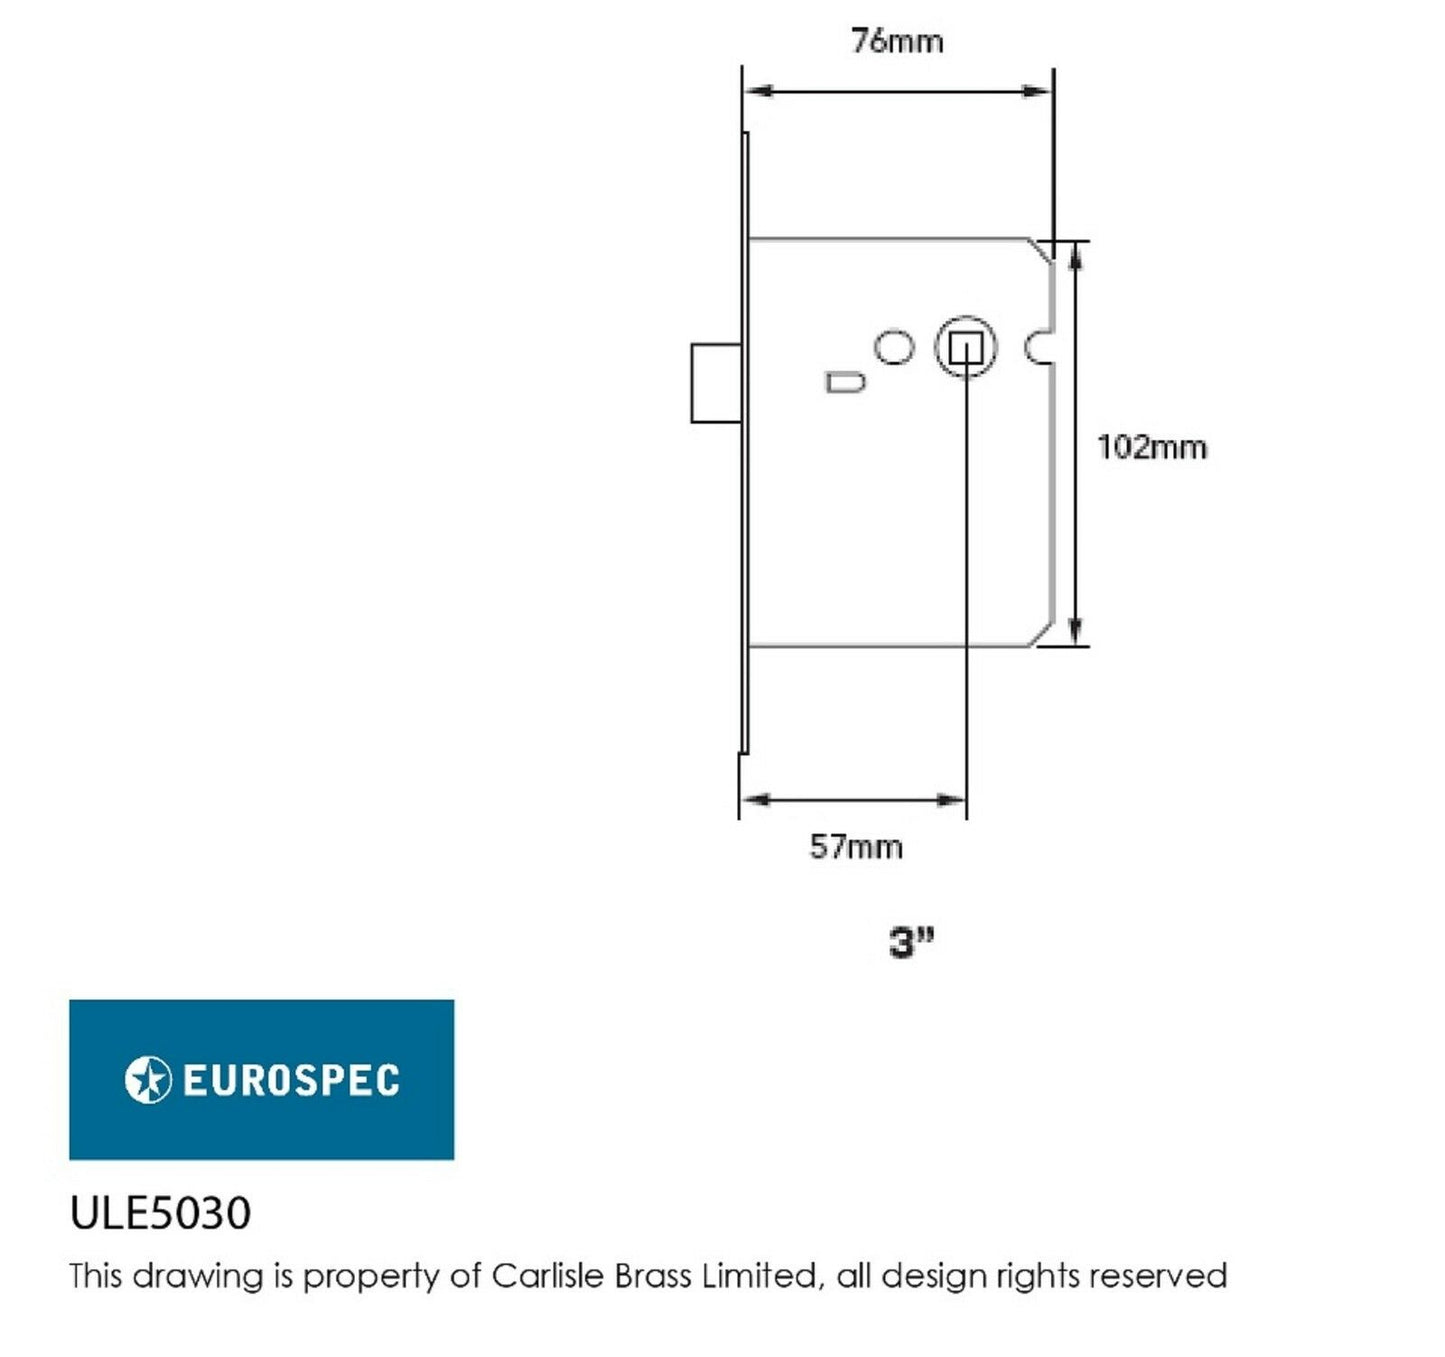 Carlisle Brass - ULE5025 - Eurospec Easi-T Contract Upright Latch